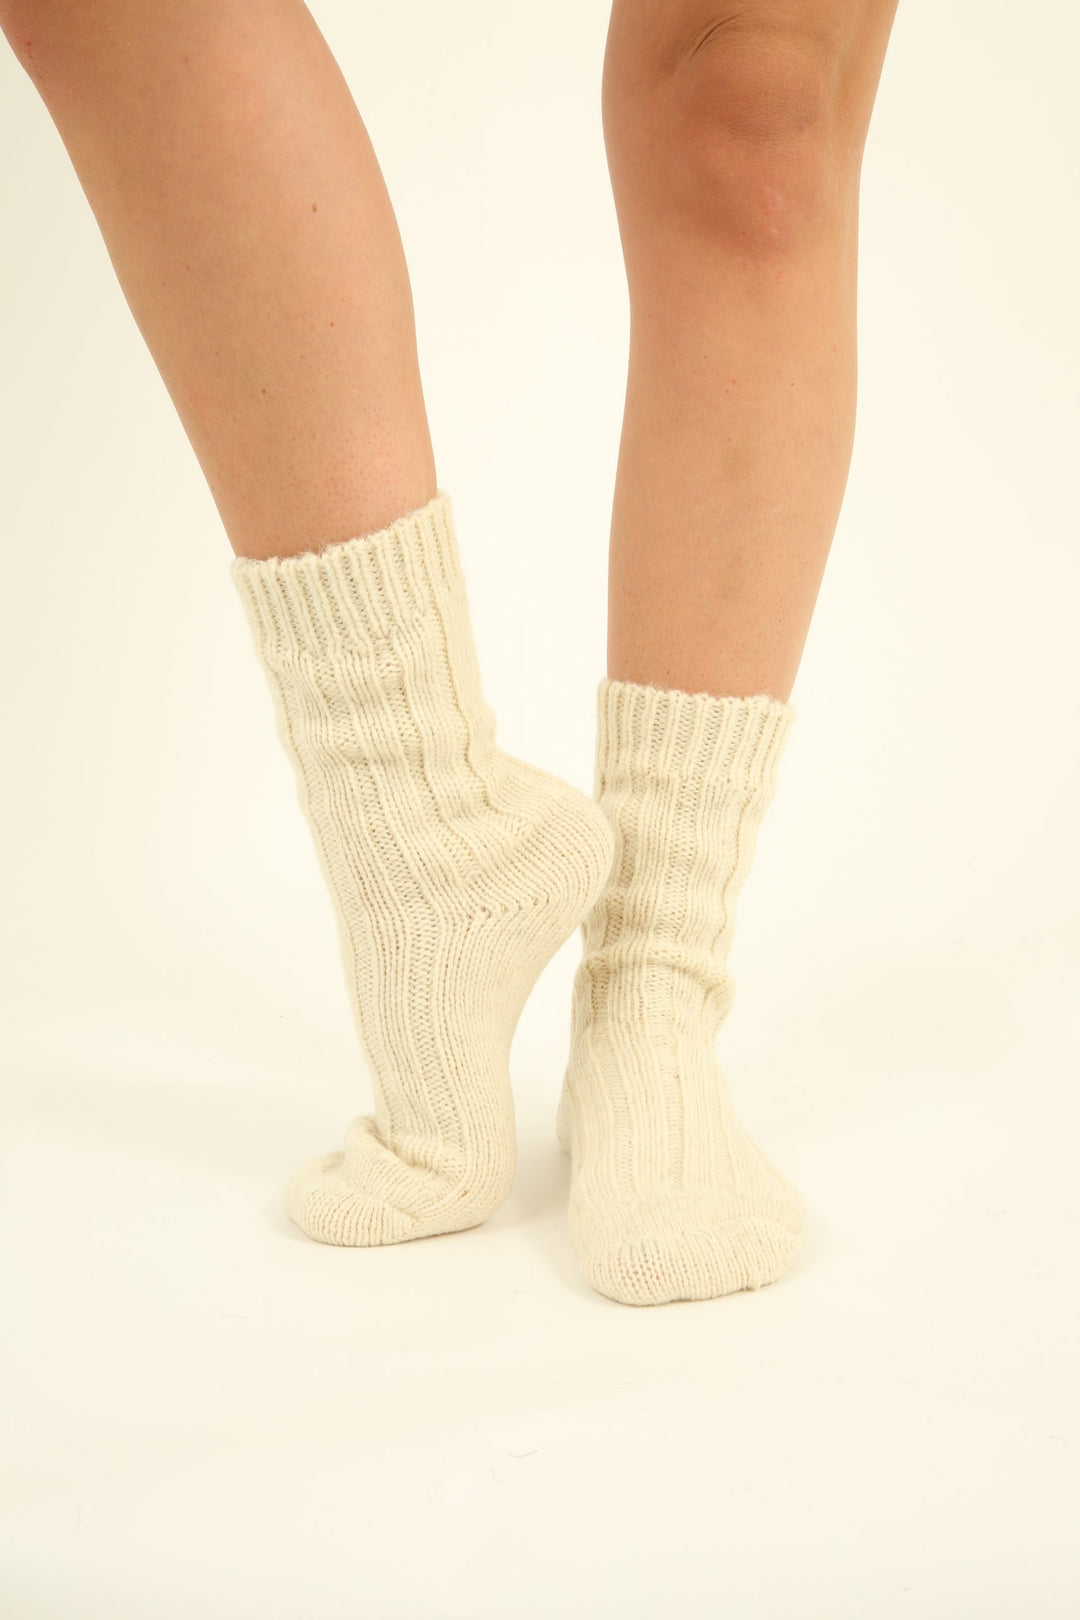 100% Virgin Wool Socks - ecri - made in Germany - 2 pair